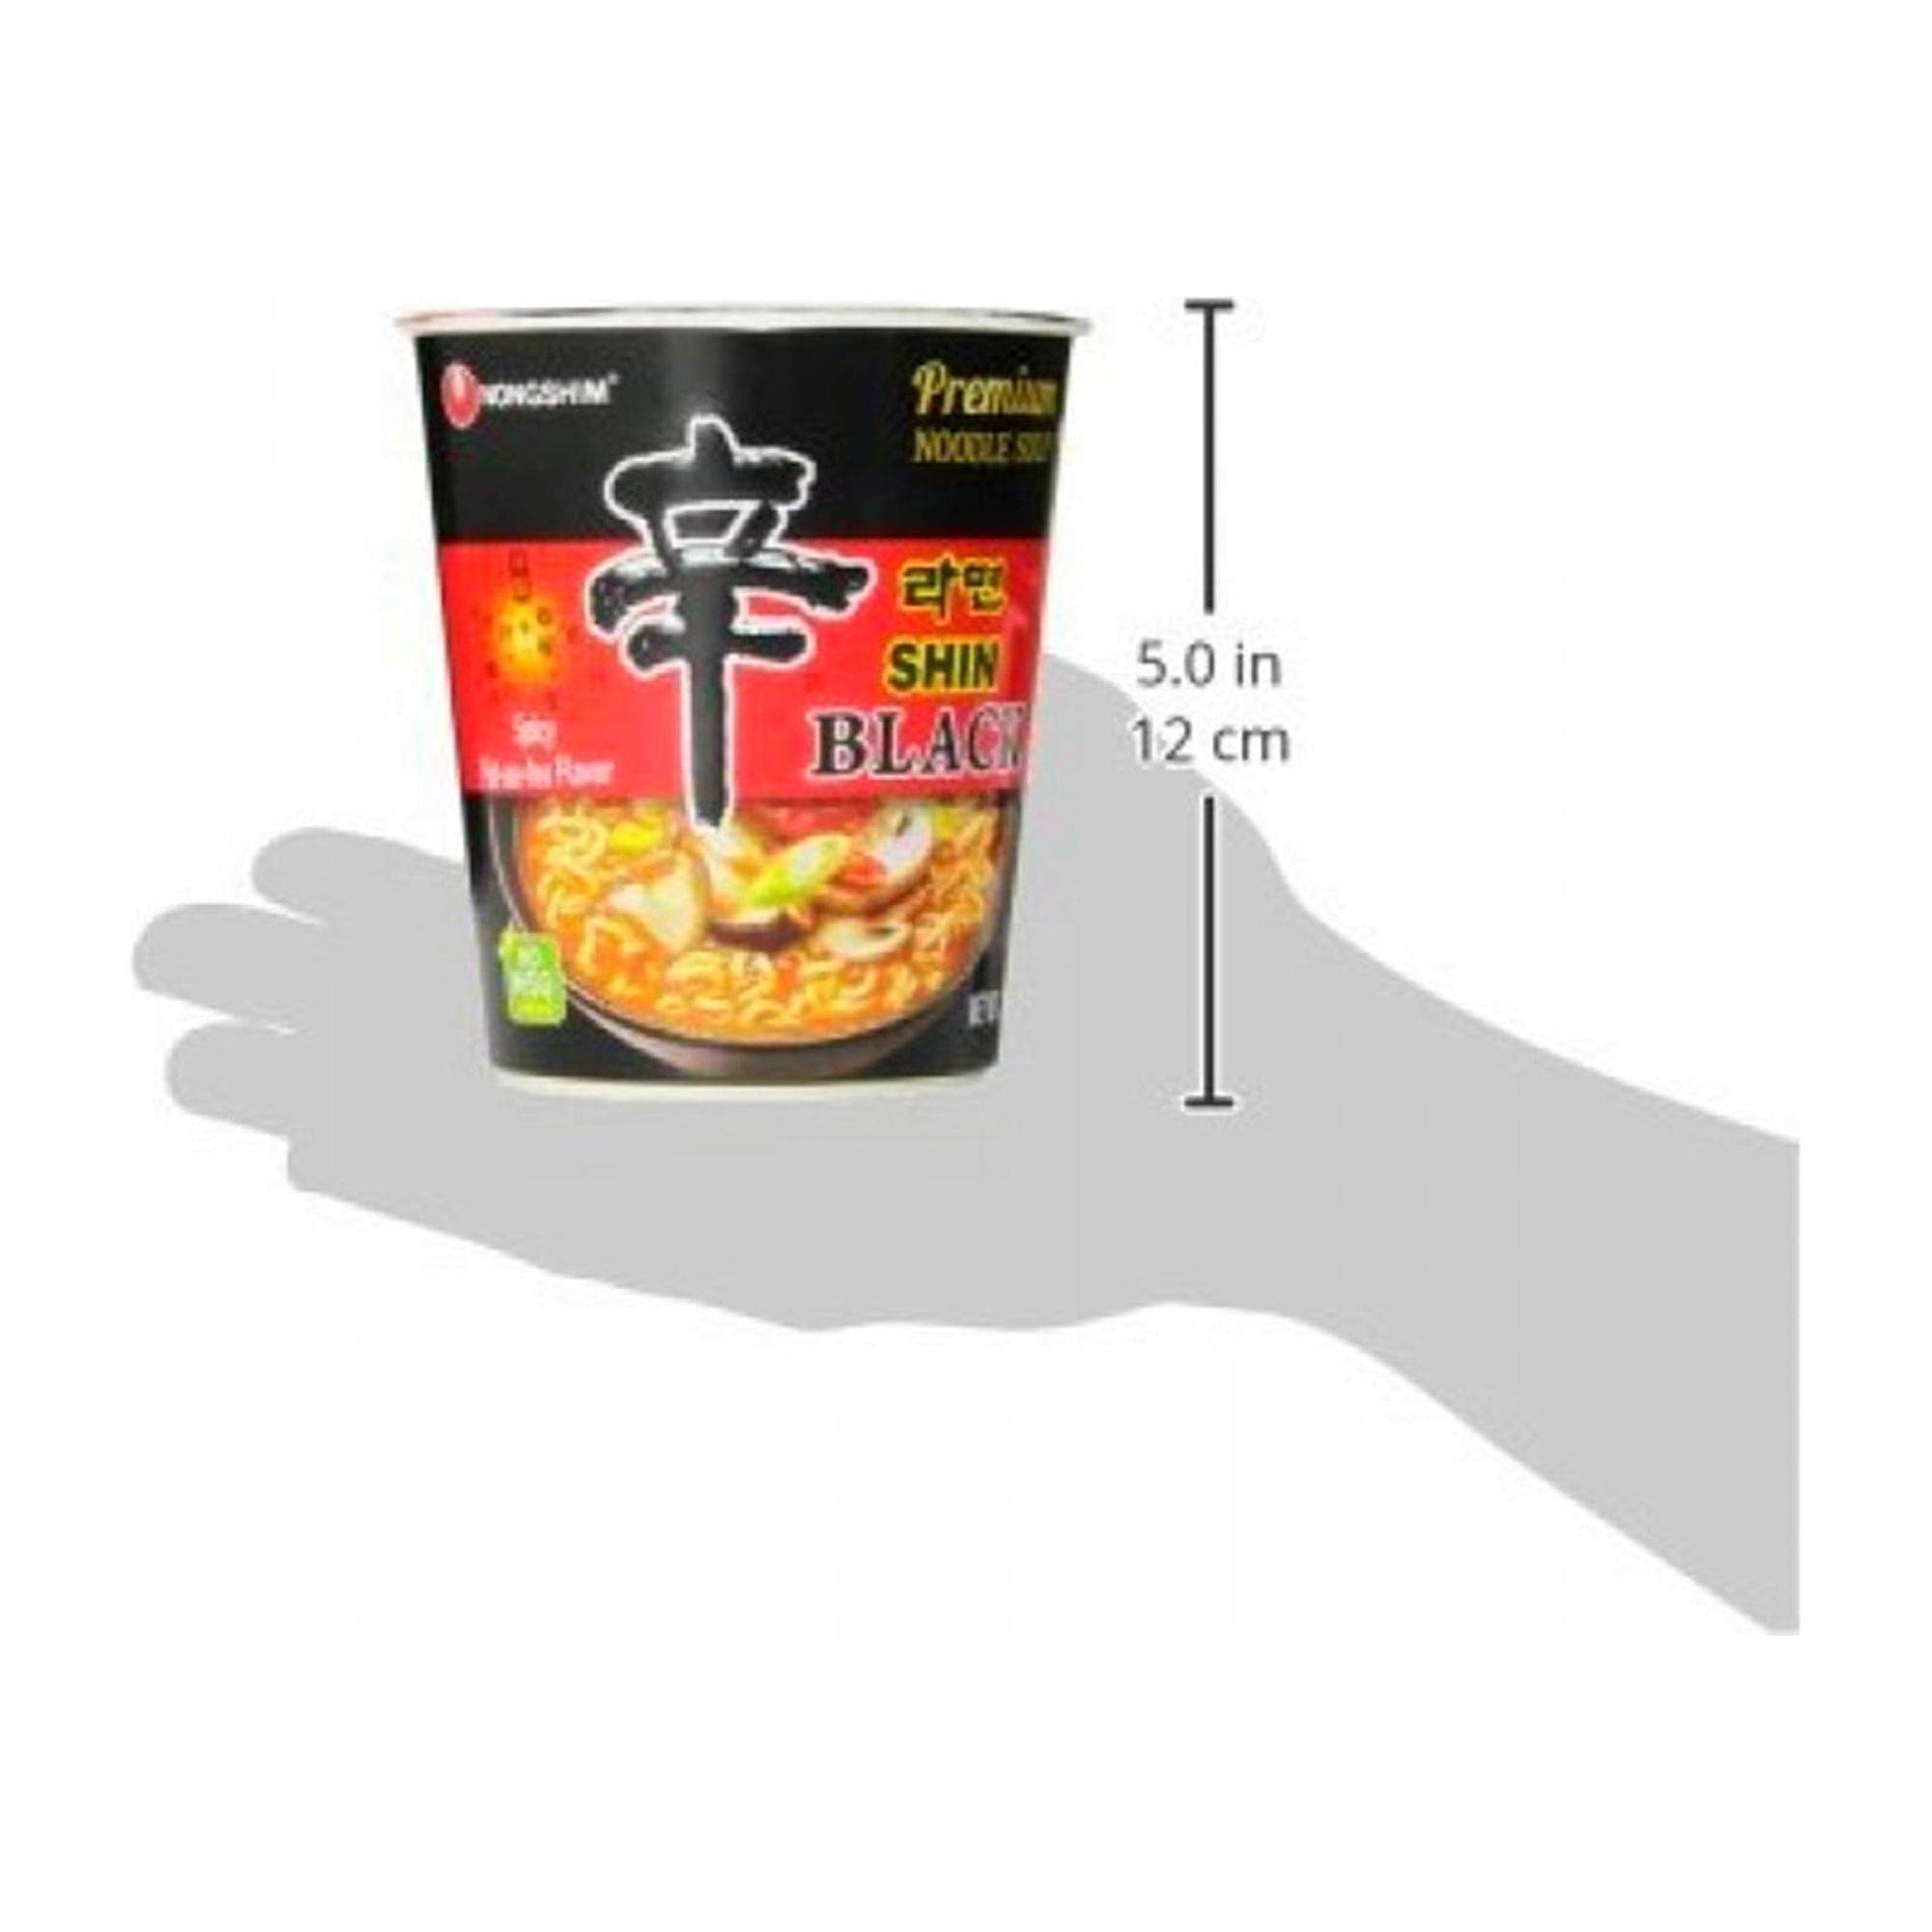 Nongshim Shin Black Premiuim Noodle Soup Cup, 3.5 oz - Ralphs